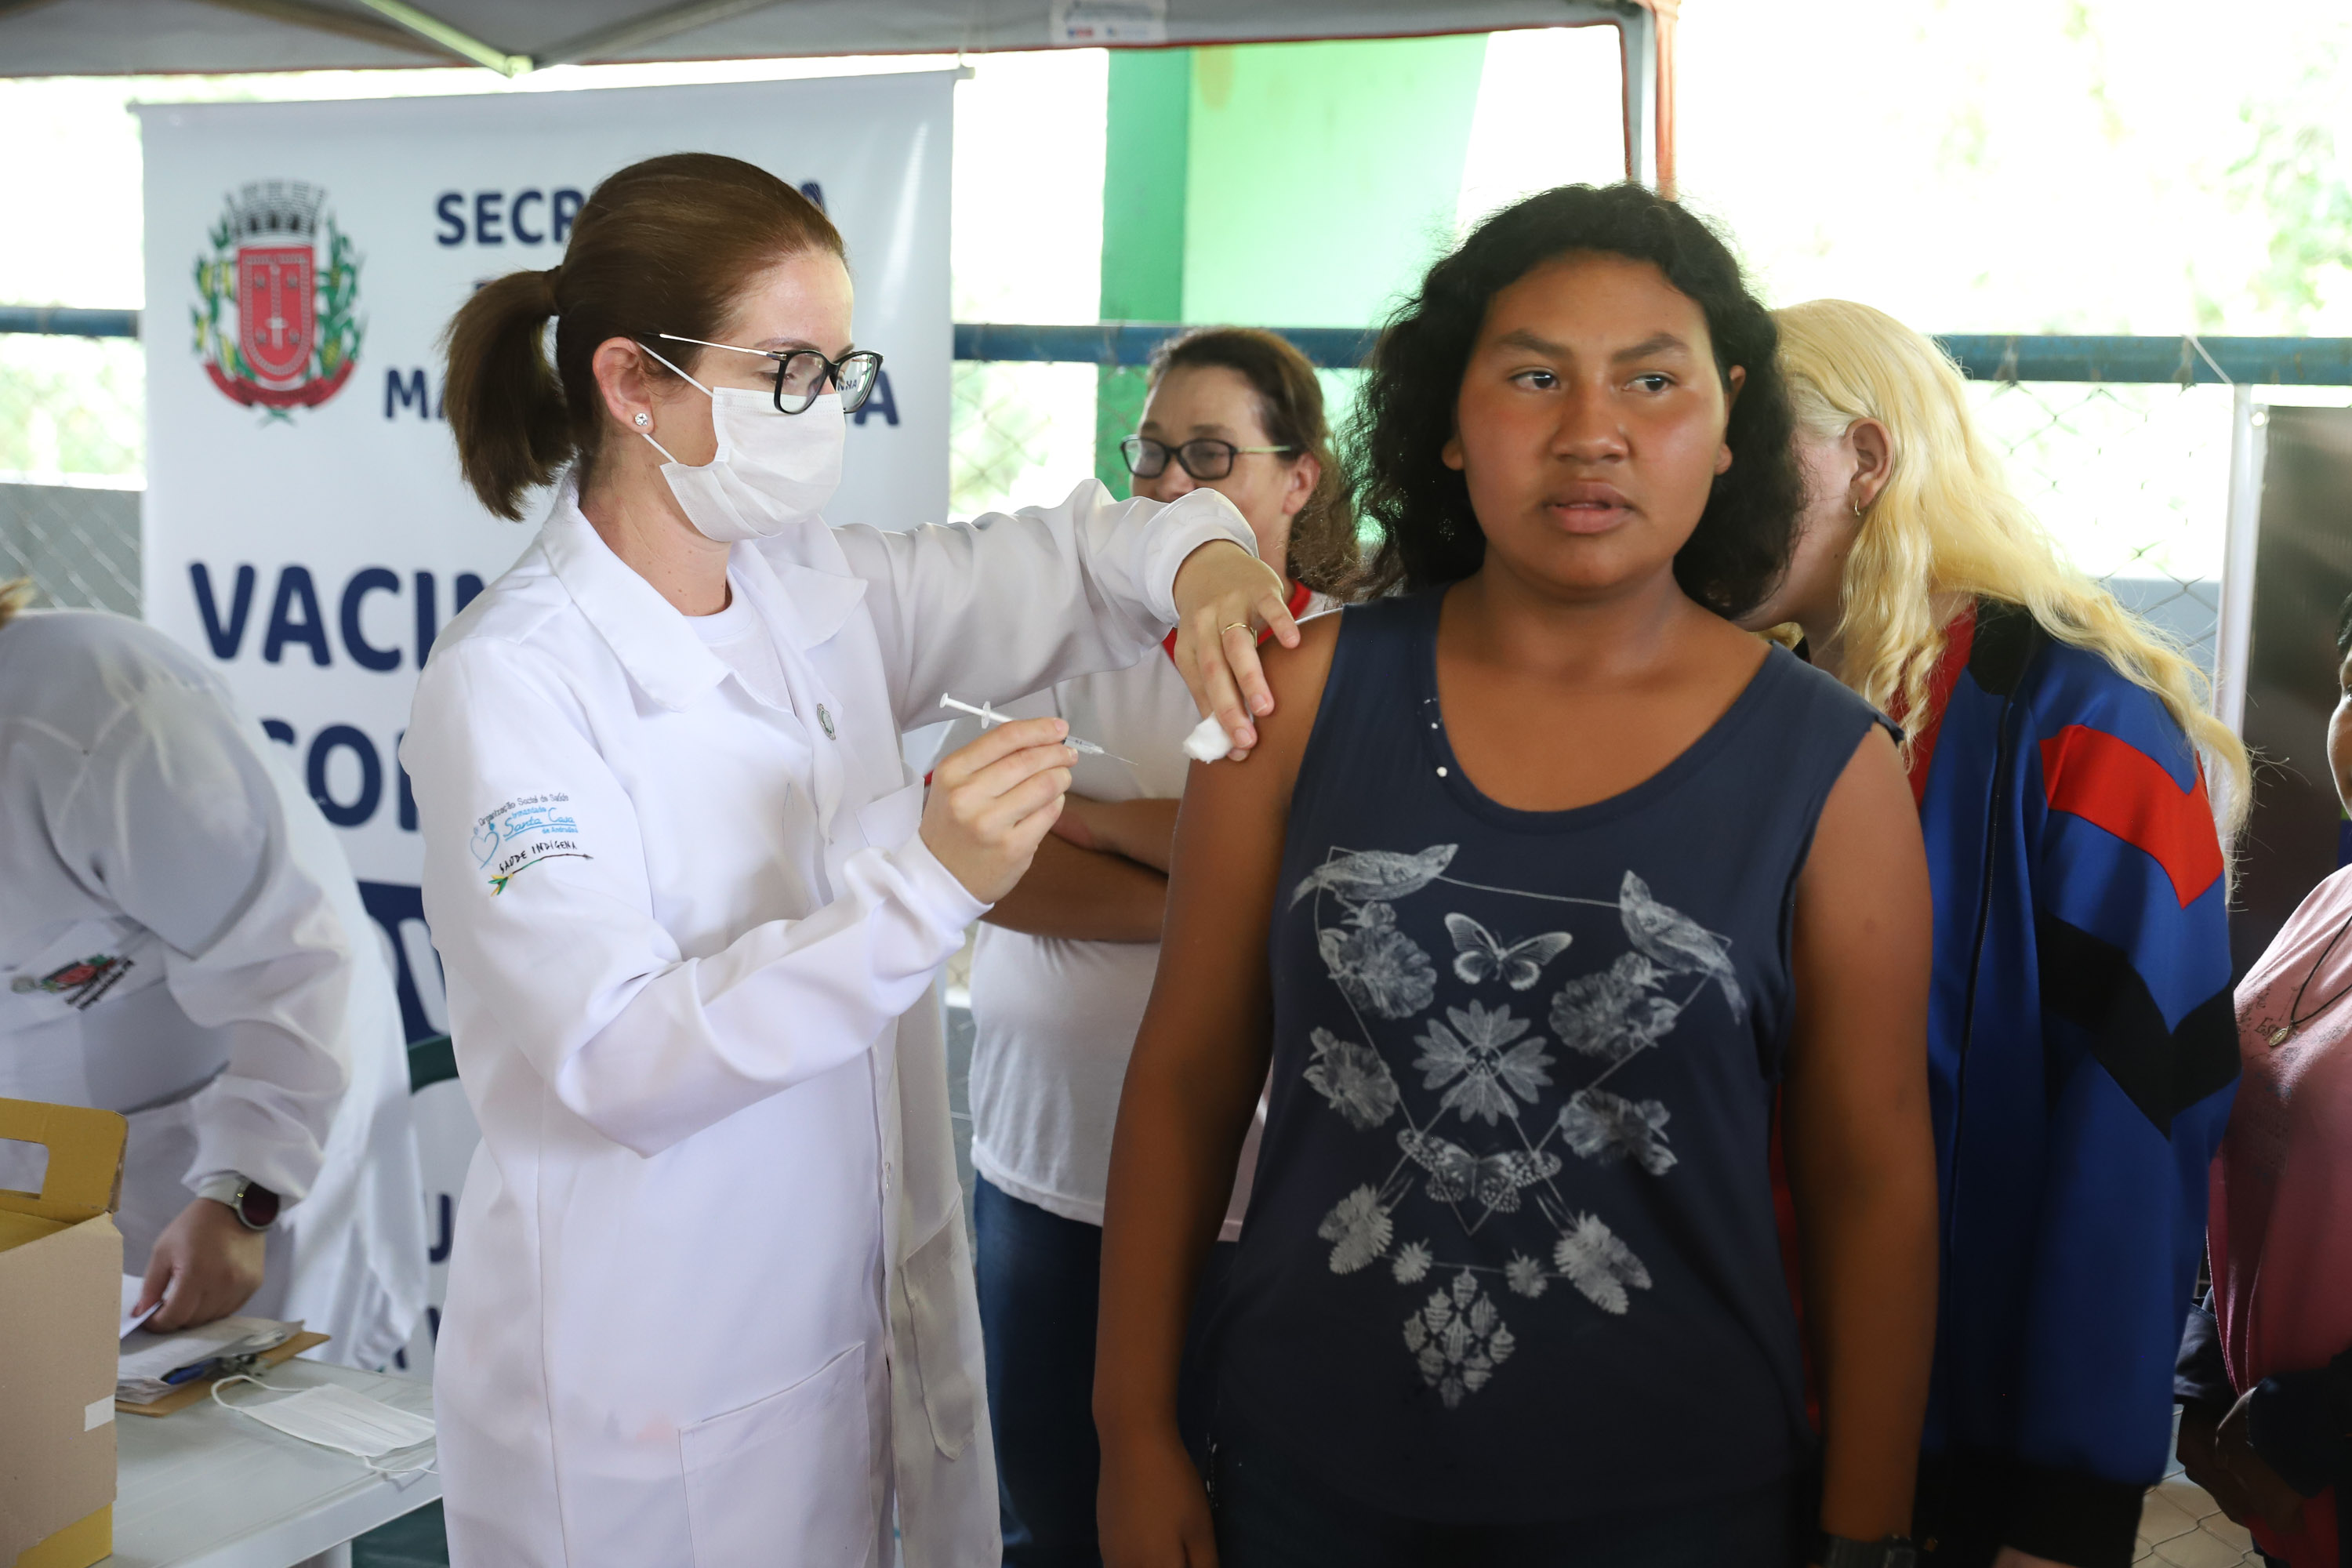 População indígena é o público com melhor índice de cobertura vacinal do Paraná